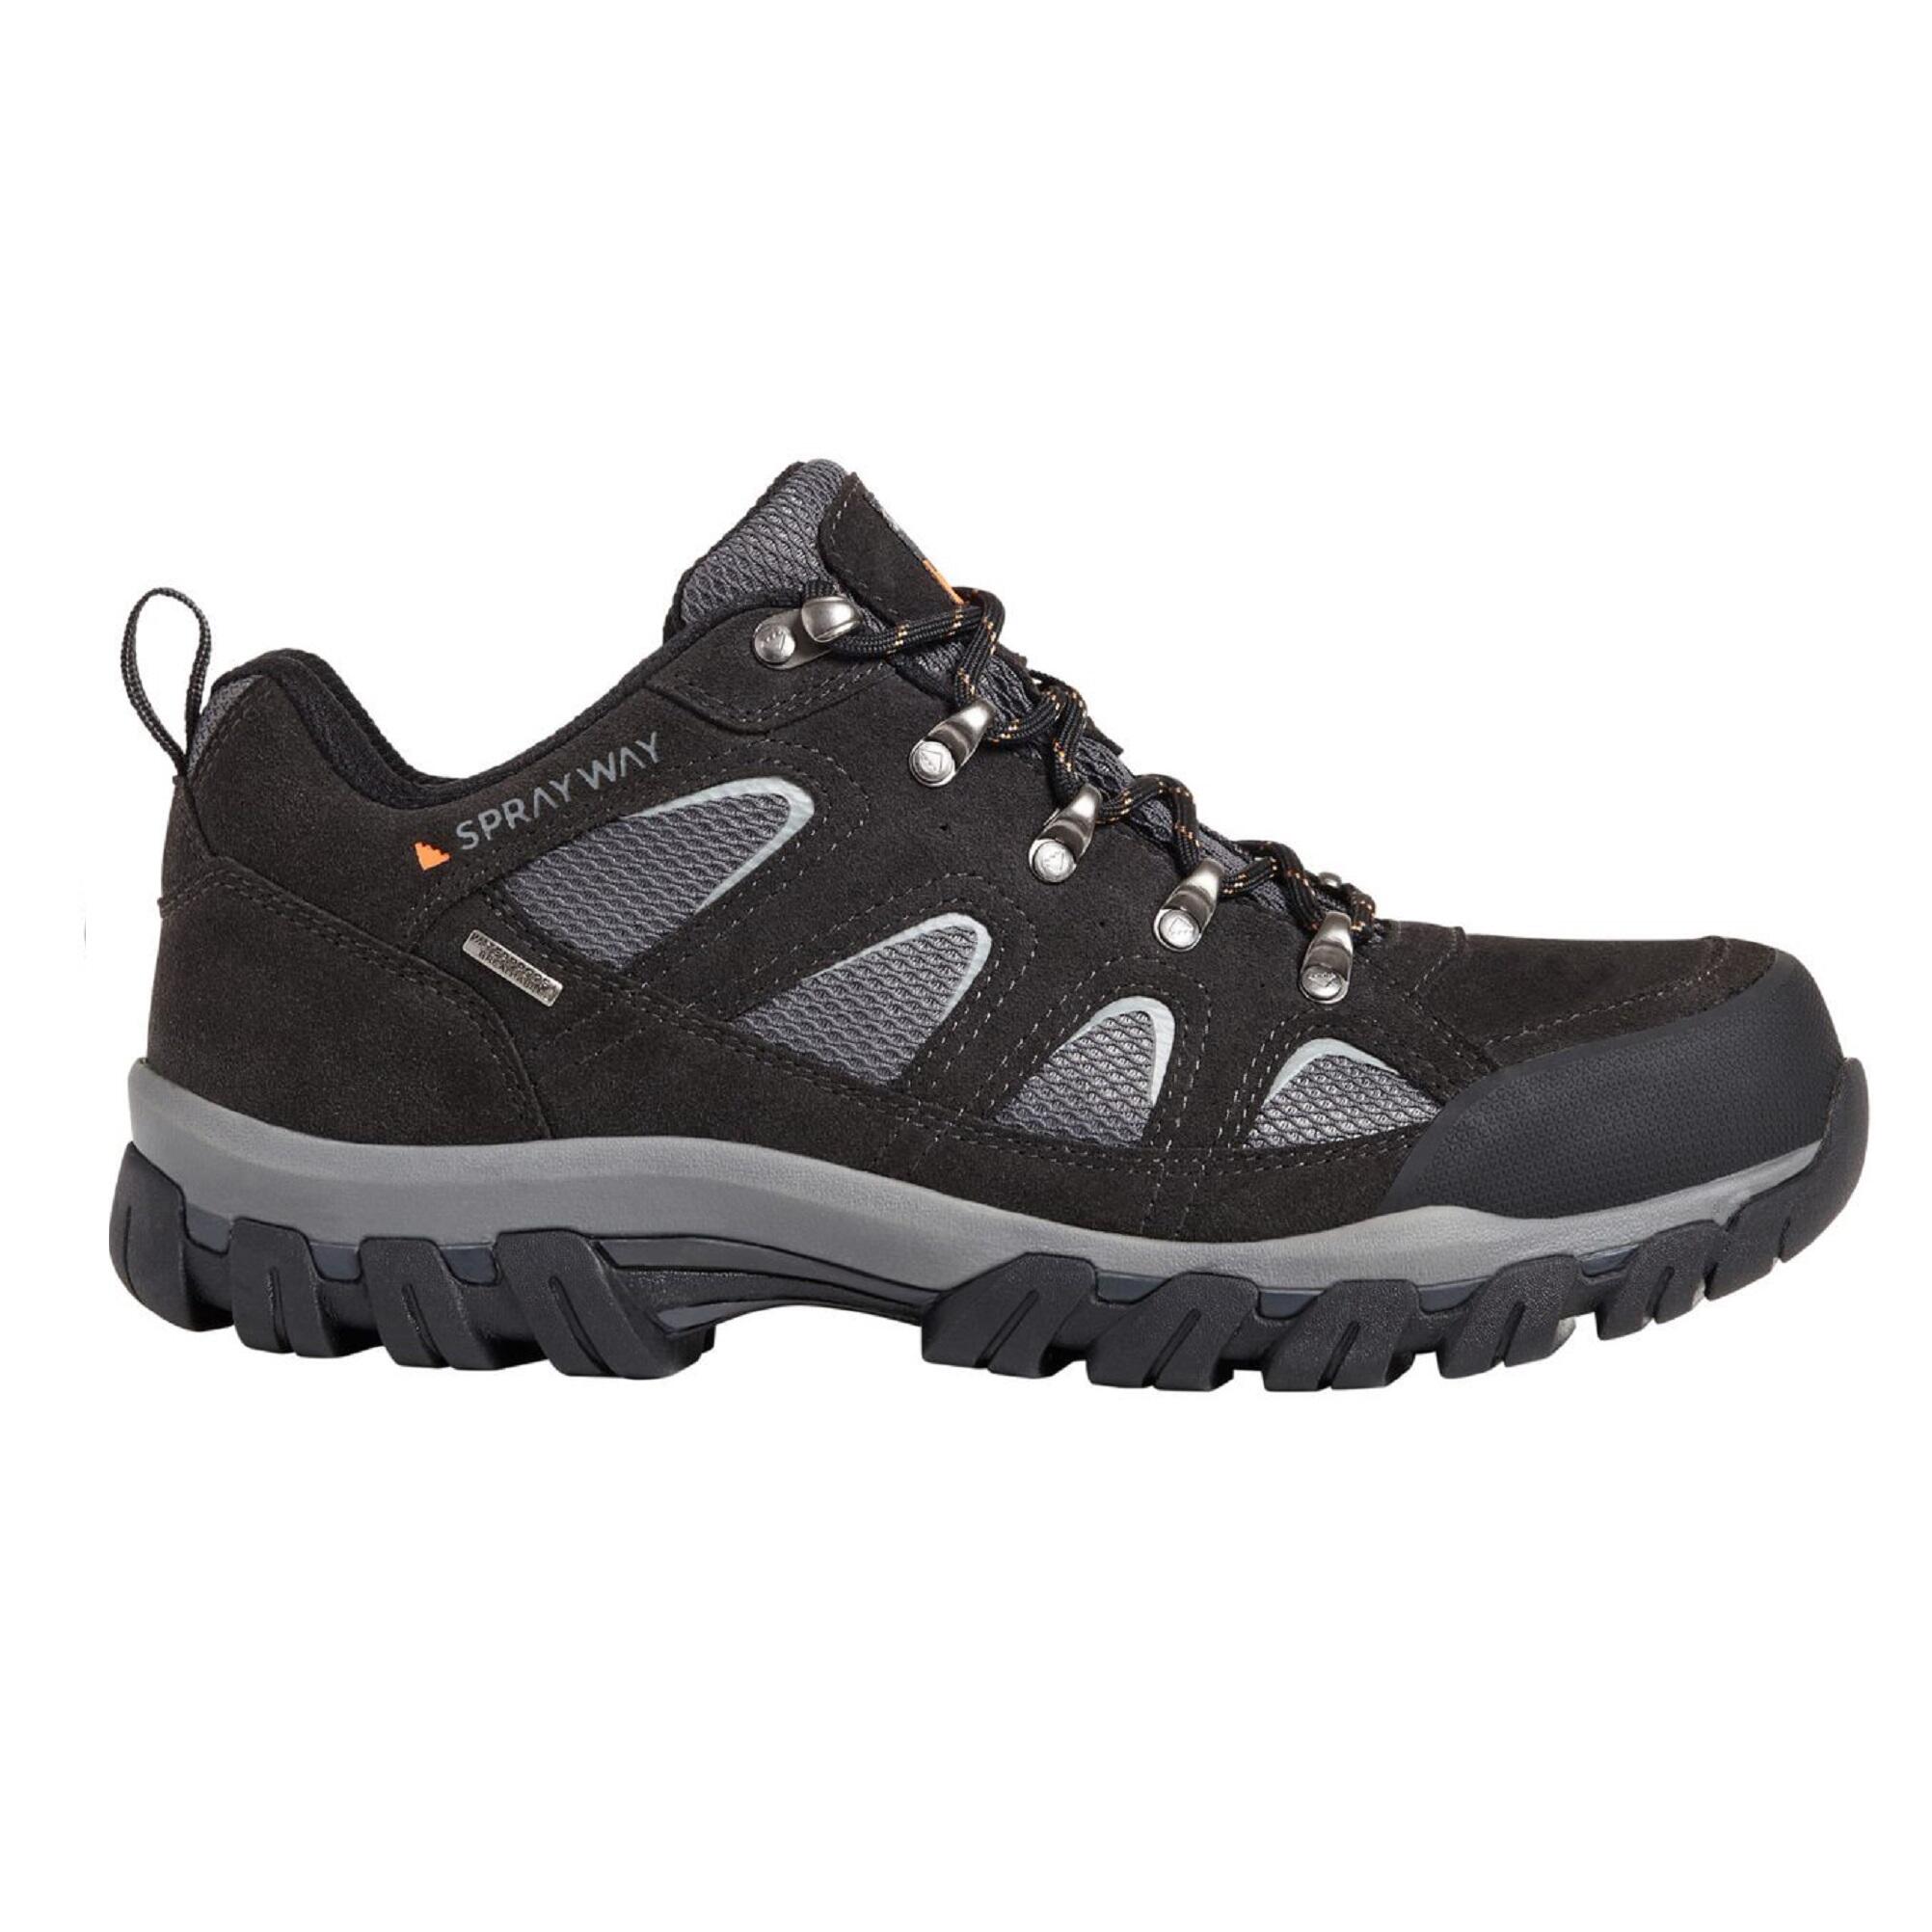 Men's waterproof walking shoes - Sprayway Mull low - Black 6/6